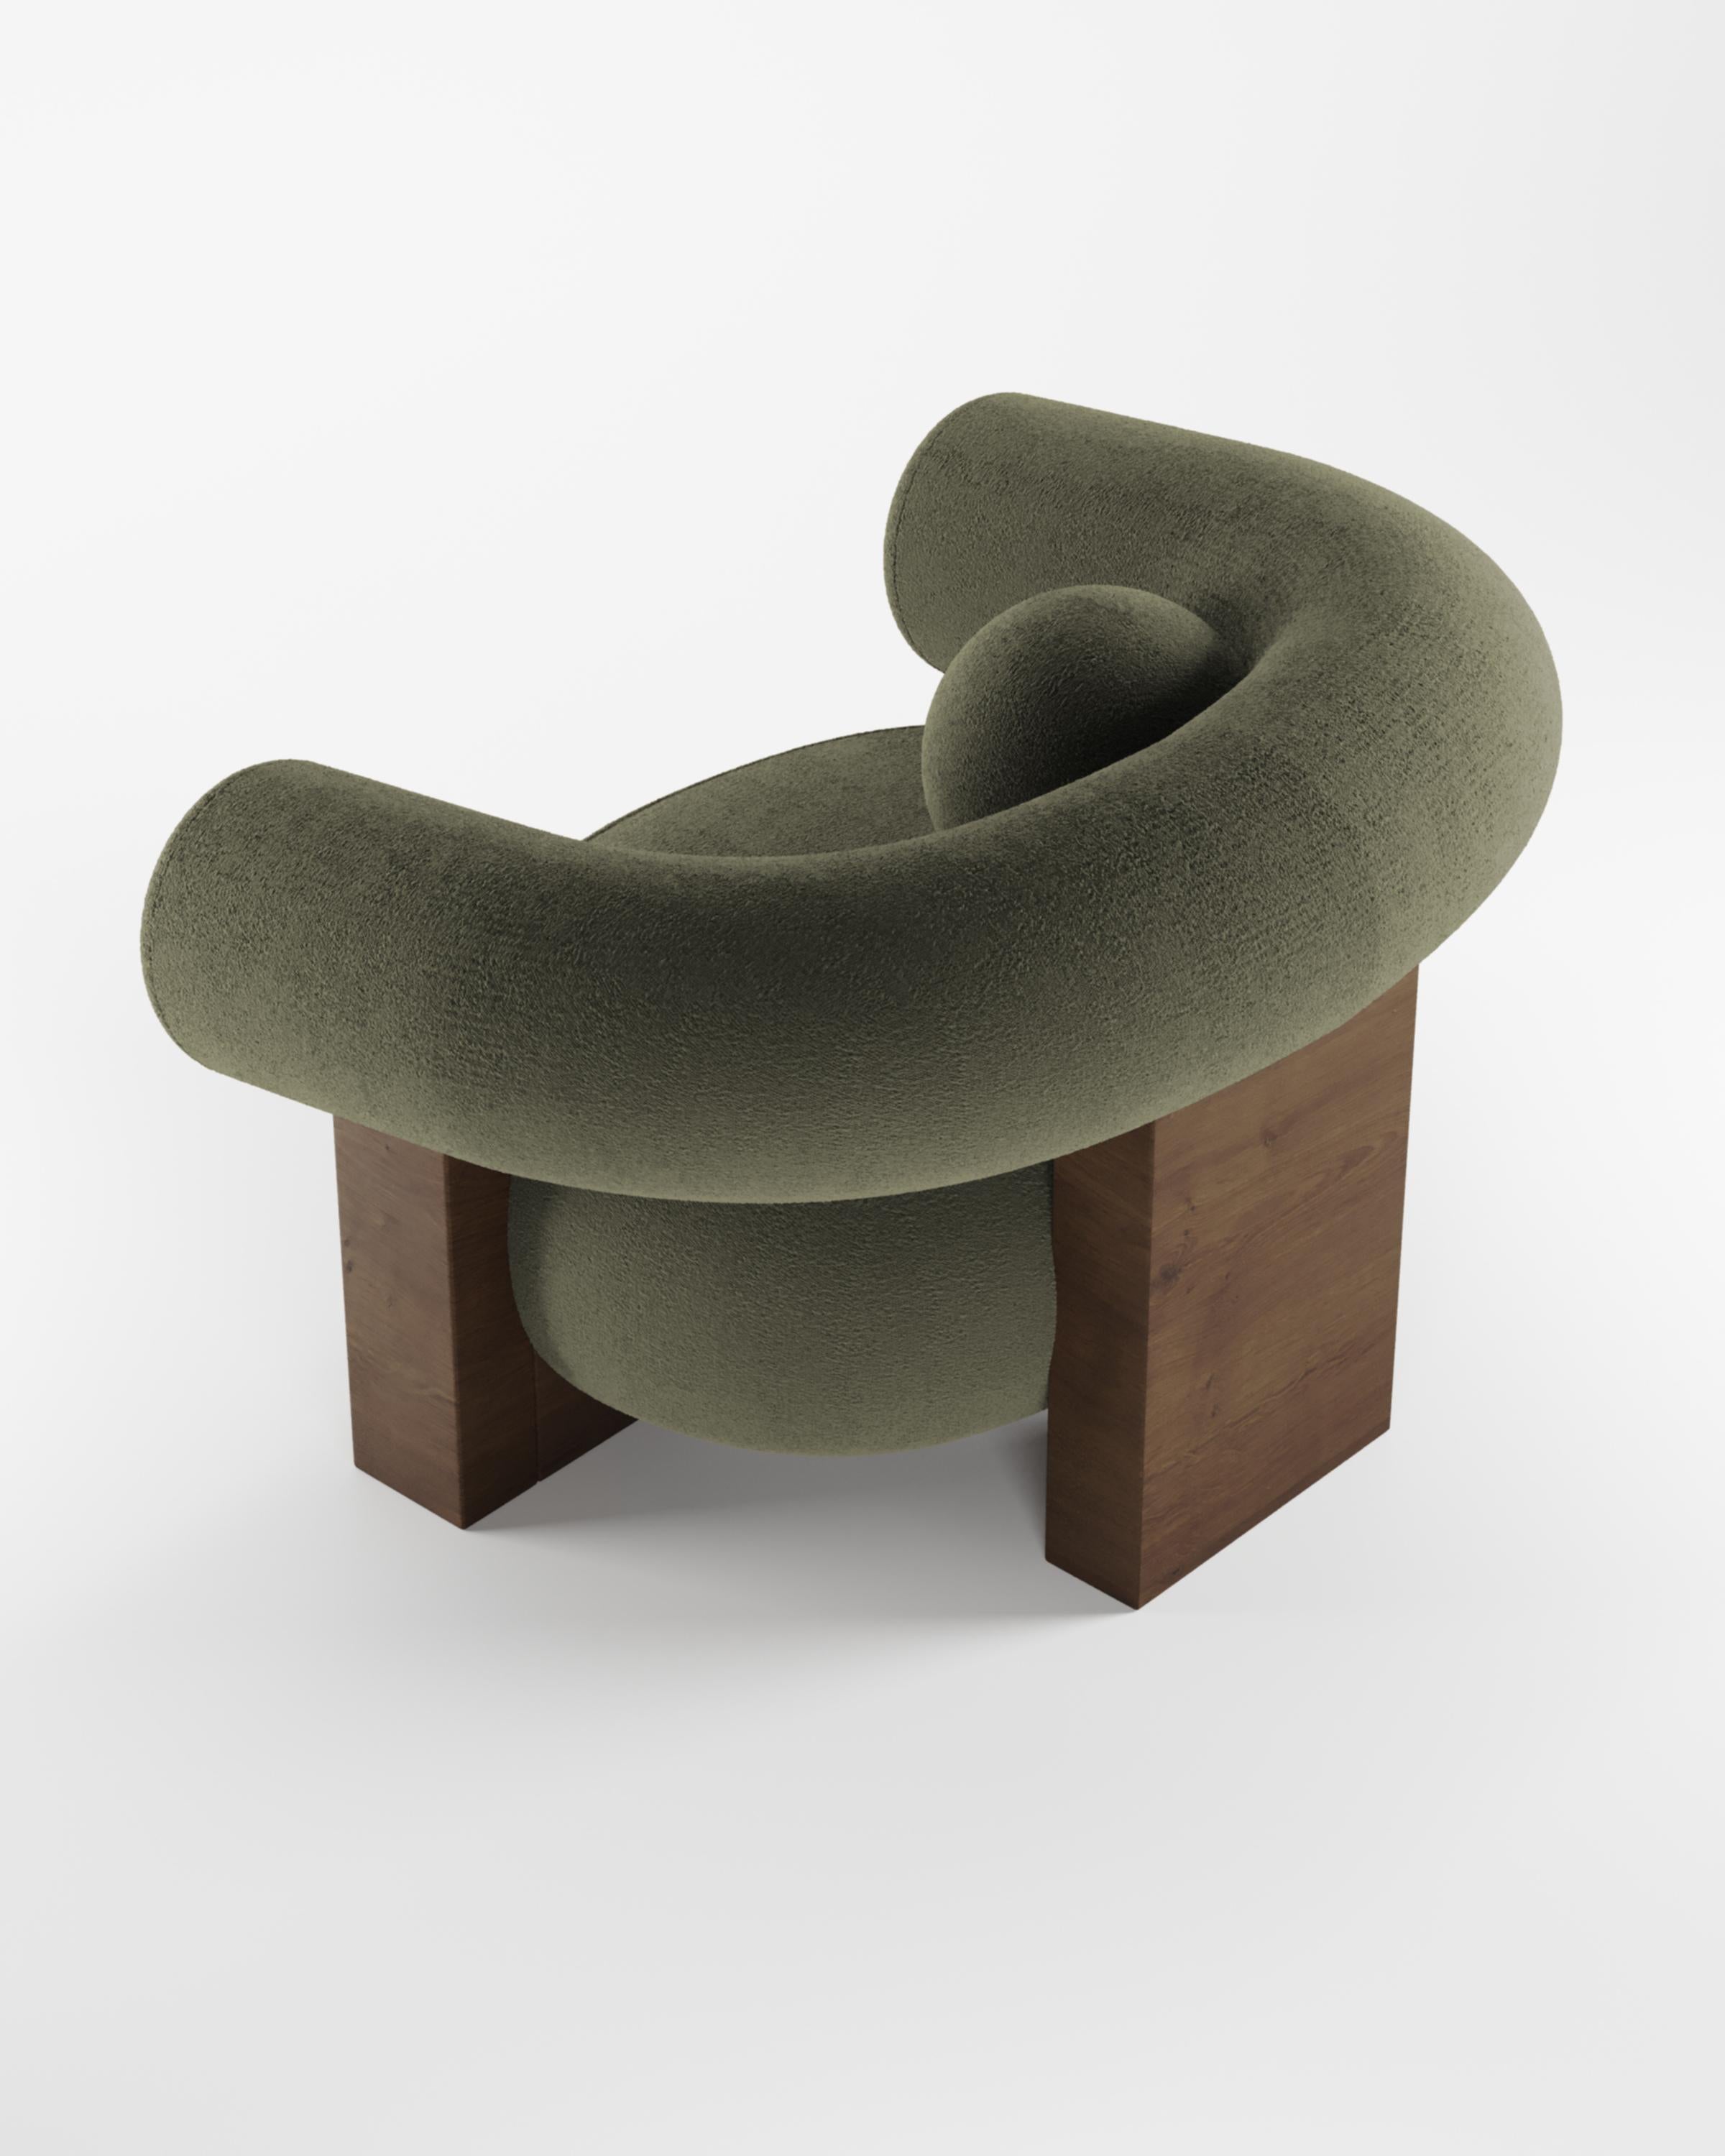 Der Sessel Cassete wurde von Alter Ego für Collector entworfen.

Untermauert von einer minimalistischen und raffinierten Ästhetik mit klaren Linien.

Abmessungen
B 110 cm 43